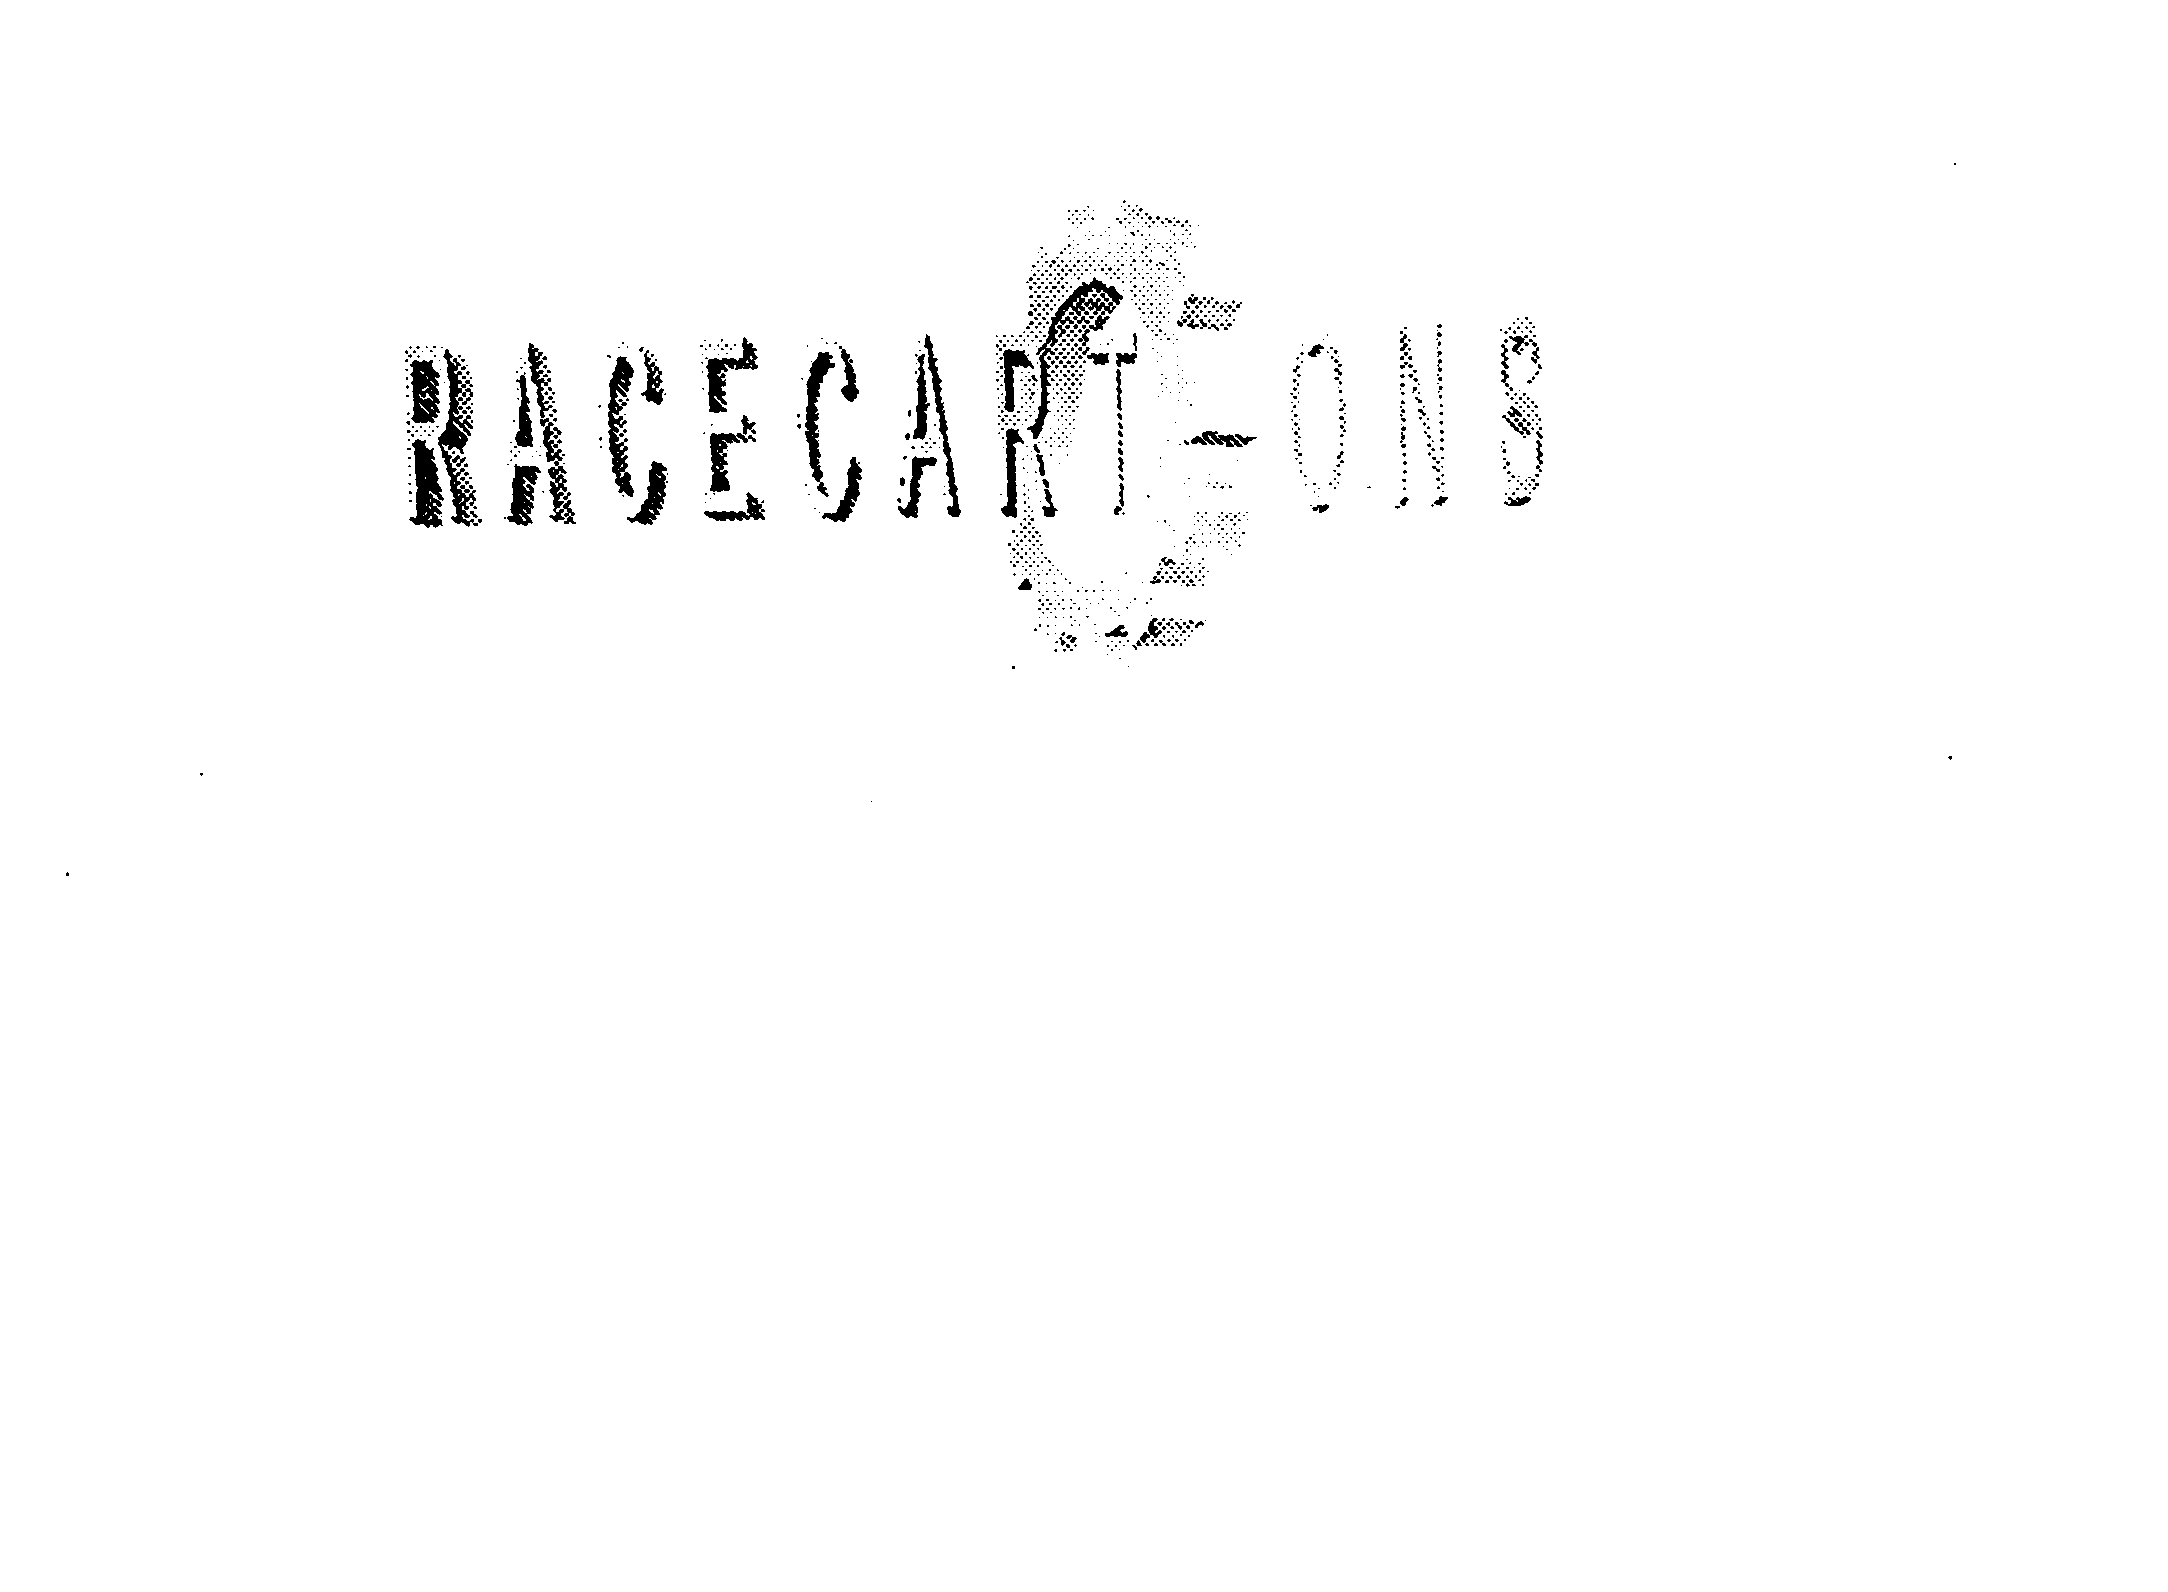  RACECARTOONS